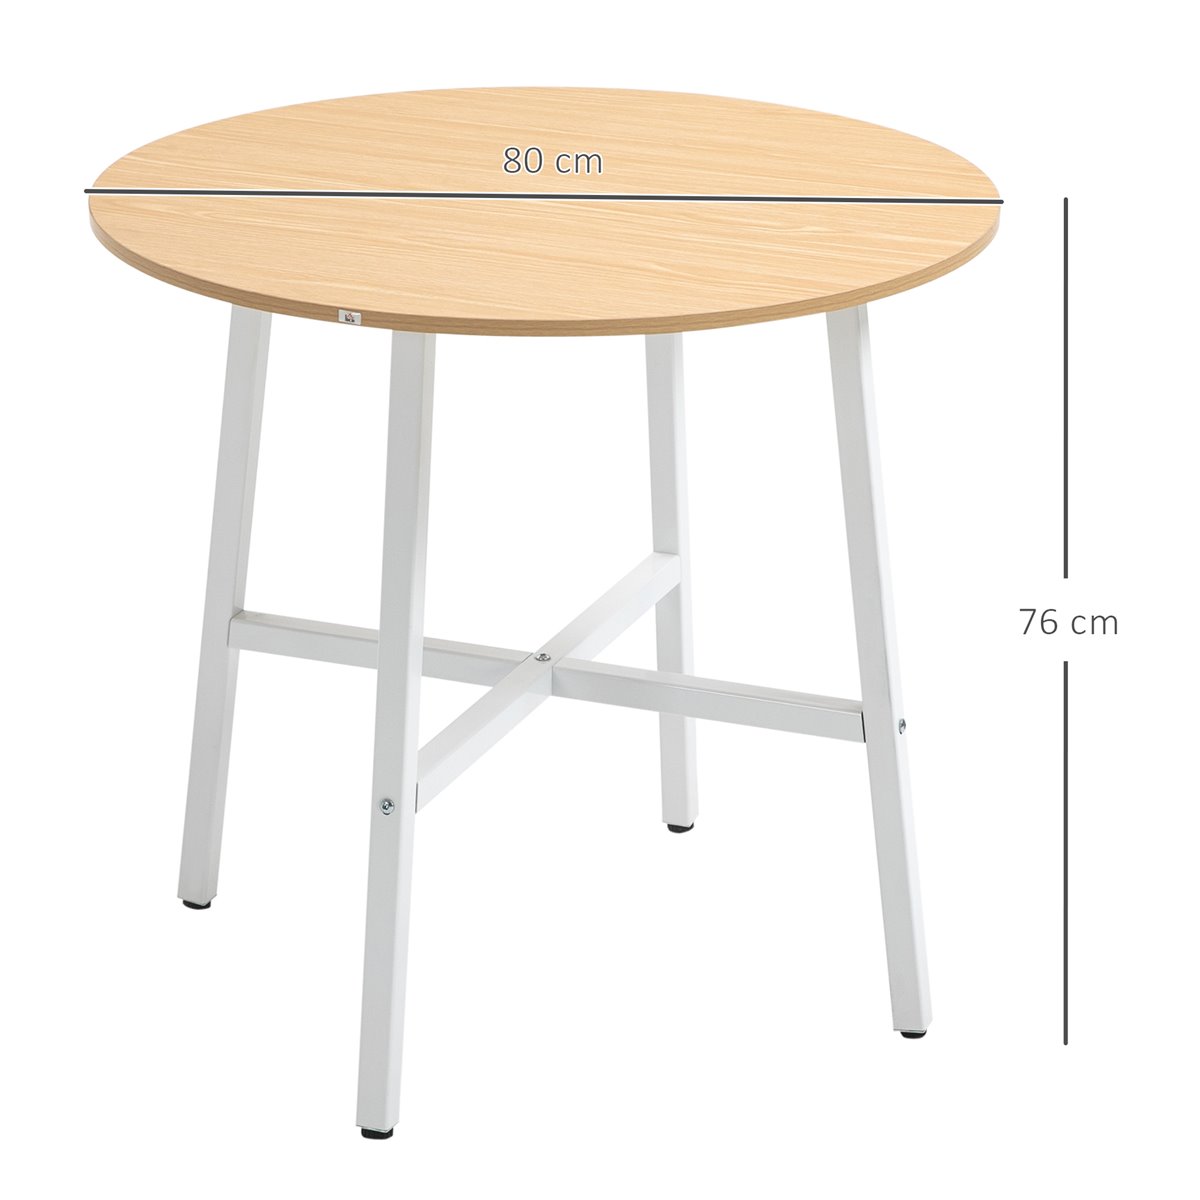 Mesa de cocina redonda en madera blanco de 80 x 73 cm